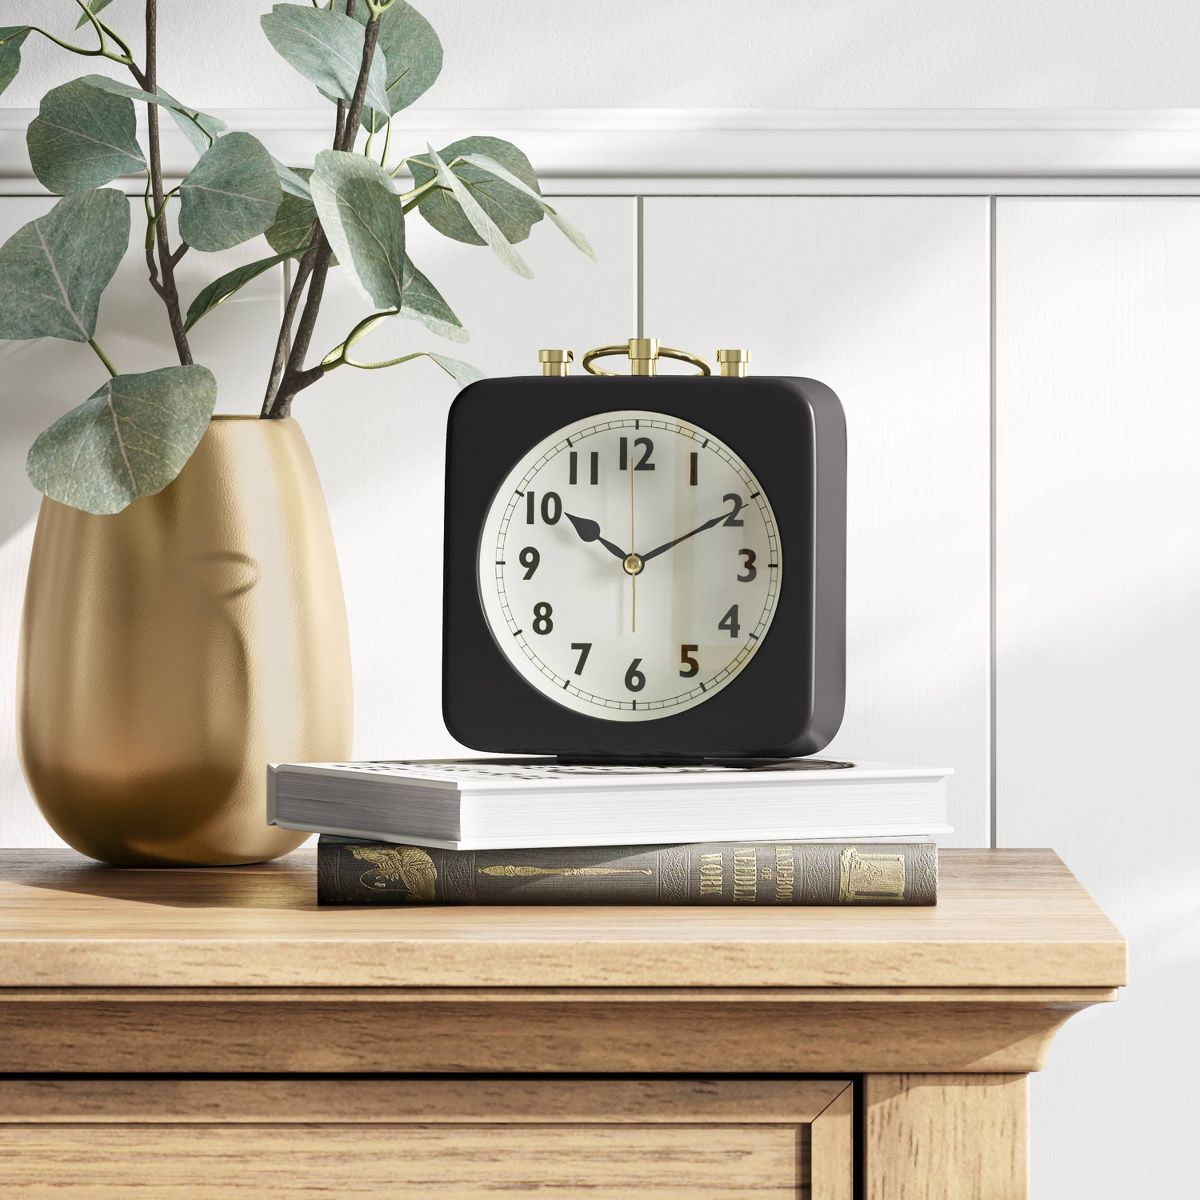 5" Square Alarm Clock Black - Threshold™ | Target